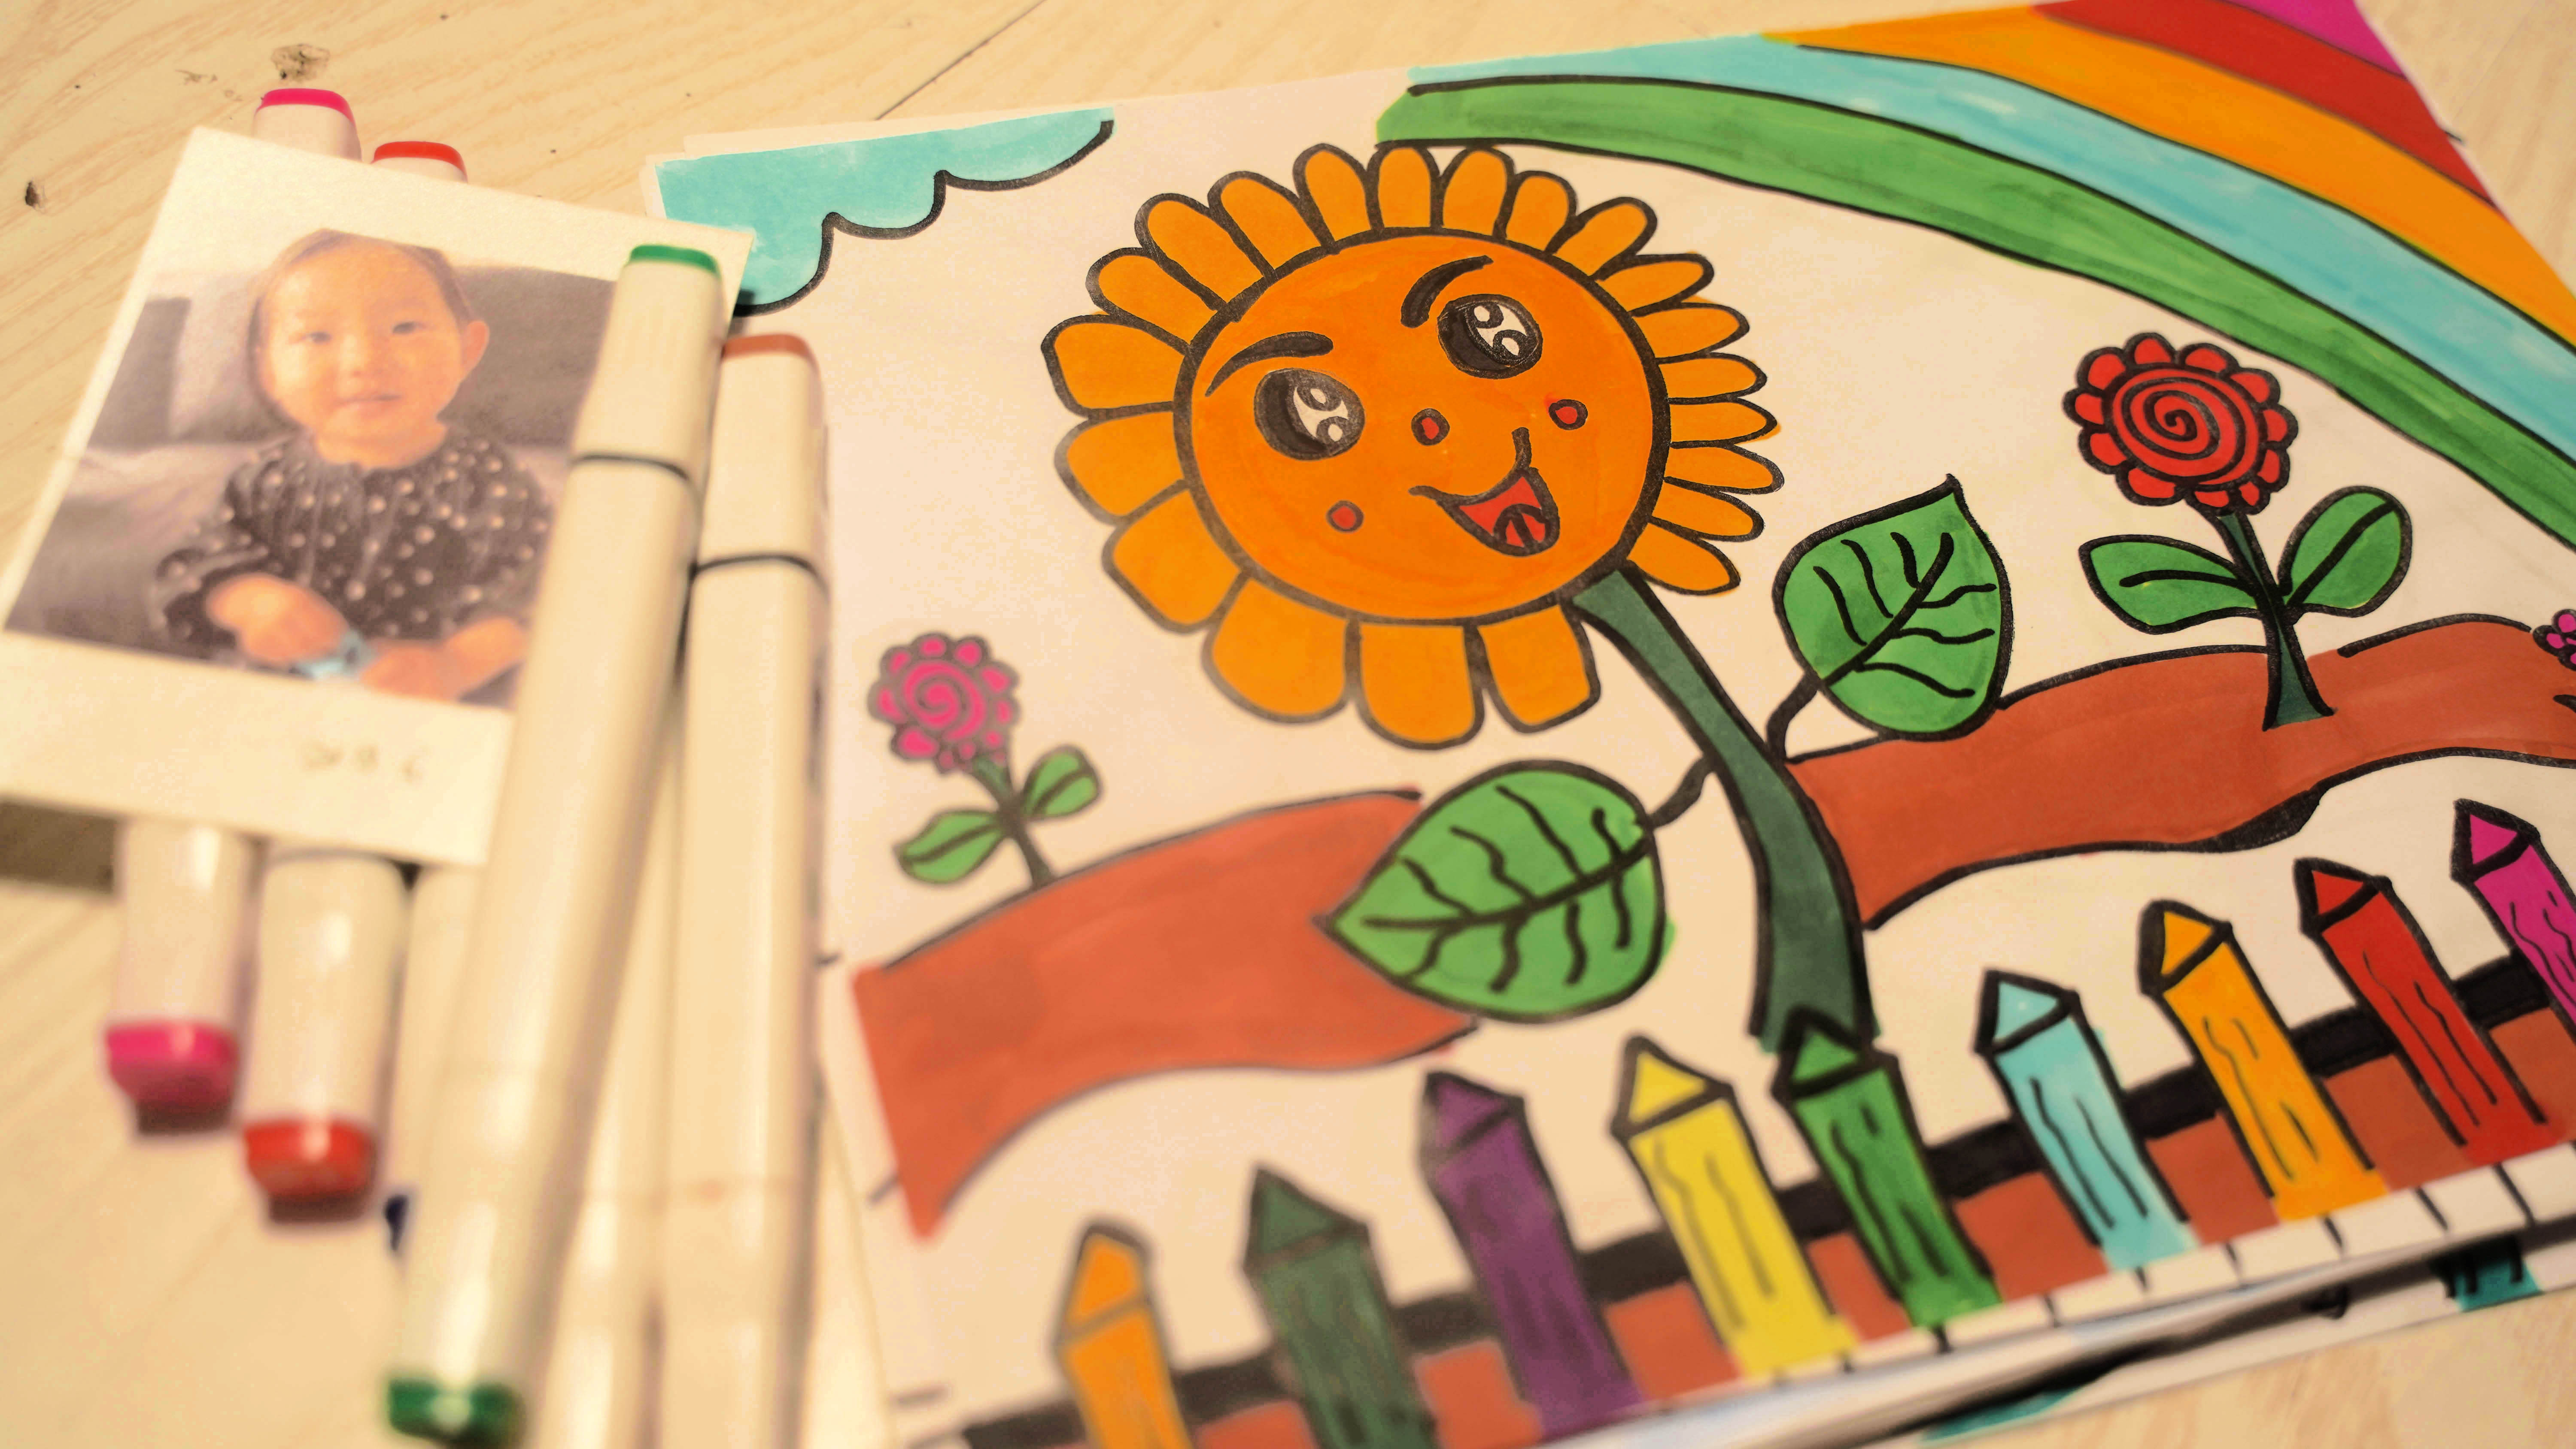 少儿可打印美术涂色画大图片 漂亮小向日葵的故事填色画大全